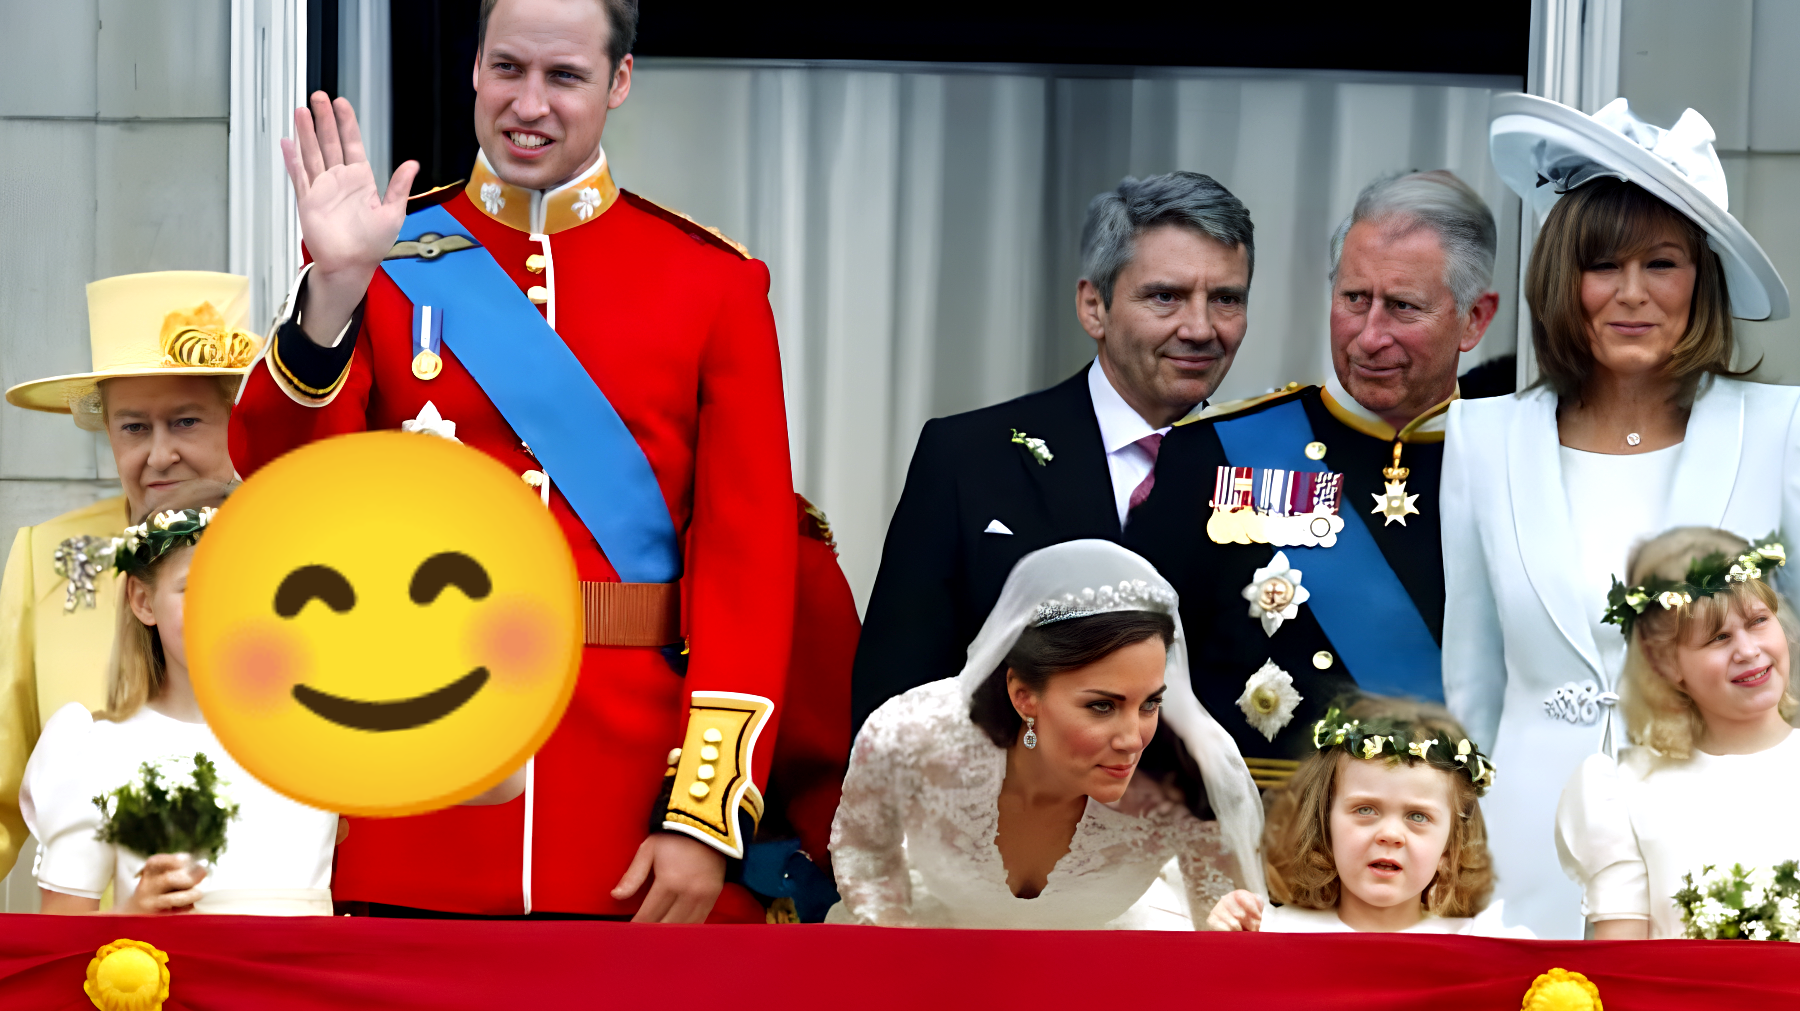 La madre di Kate Middleton fa una confessione sconvolgente: "Lo ha fatto davvero prima di diventare Principessa?"